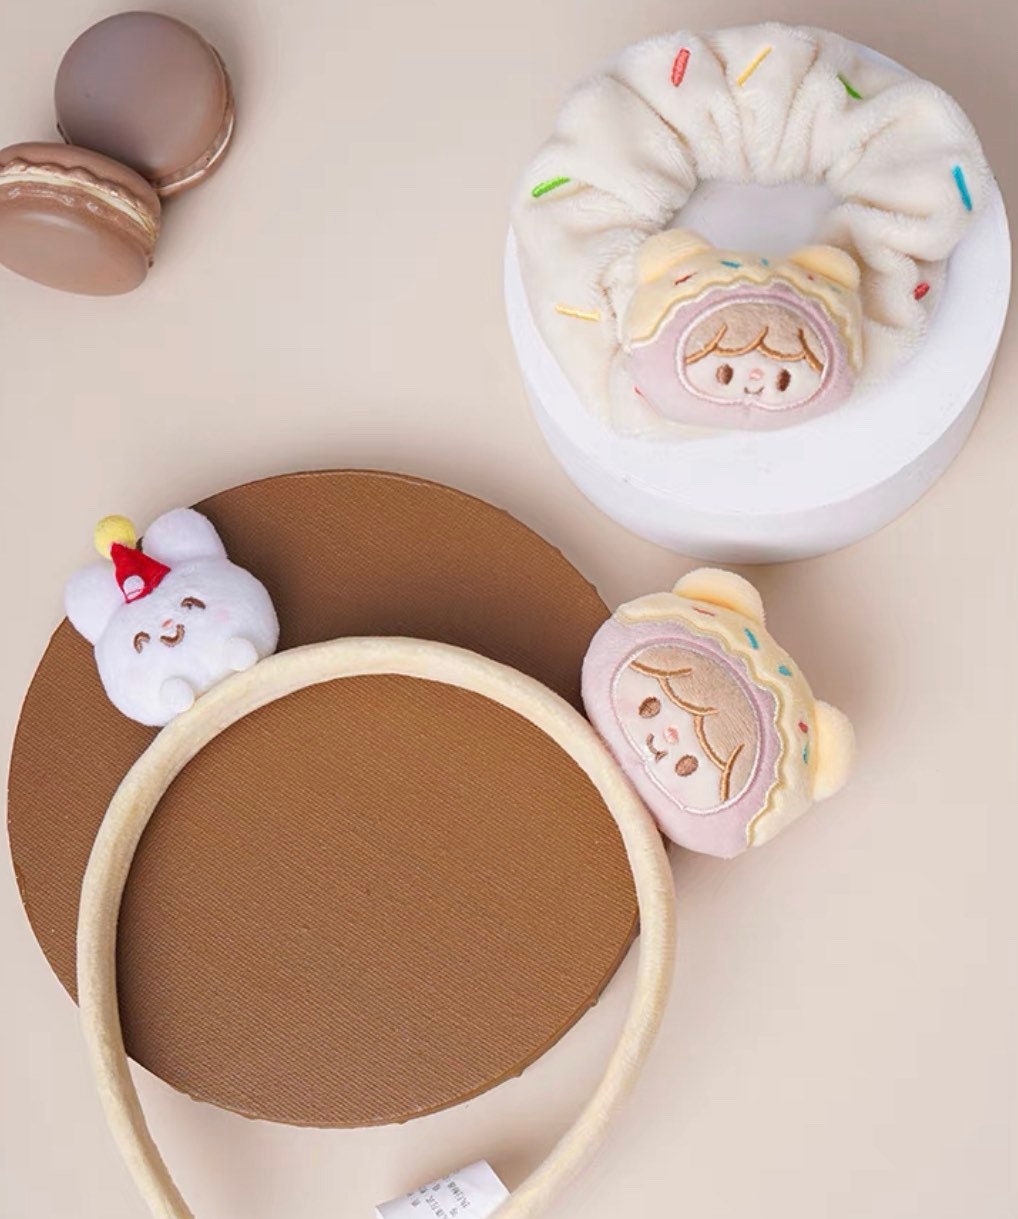 Molinta 「Baking Park」series stationery kawaii pudding plush hair accessories set